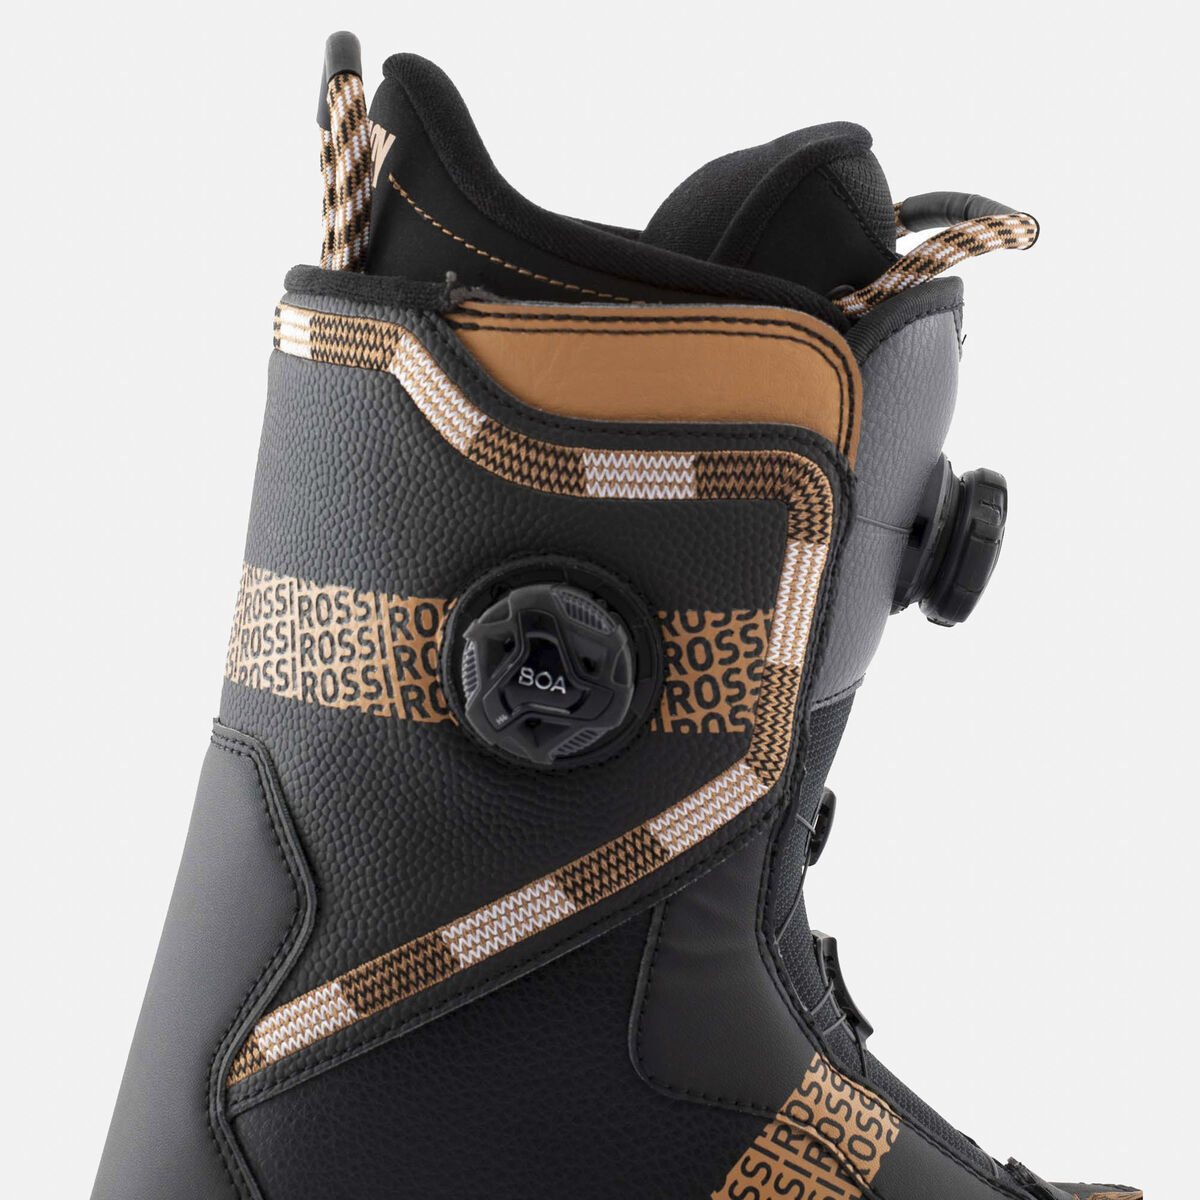 Boots de snowboard Primacy Boa® Focus homme